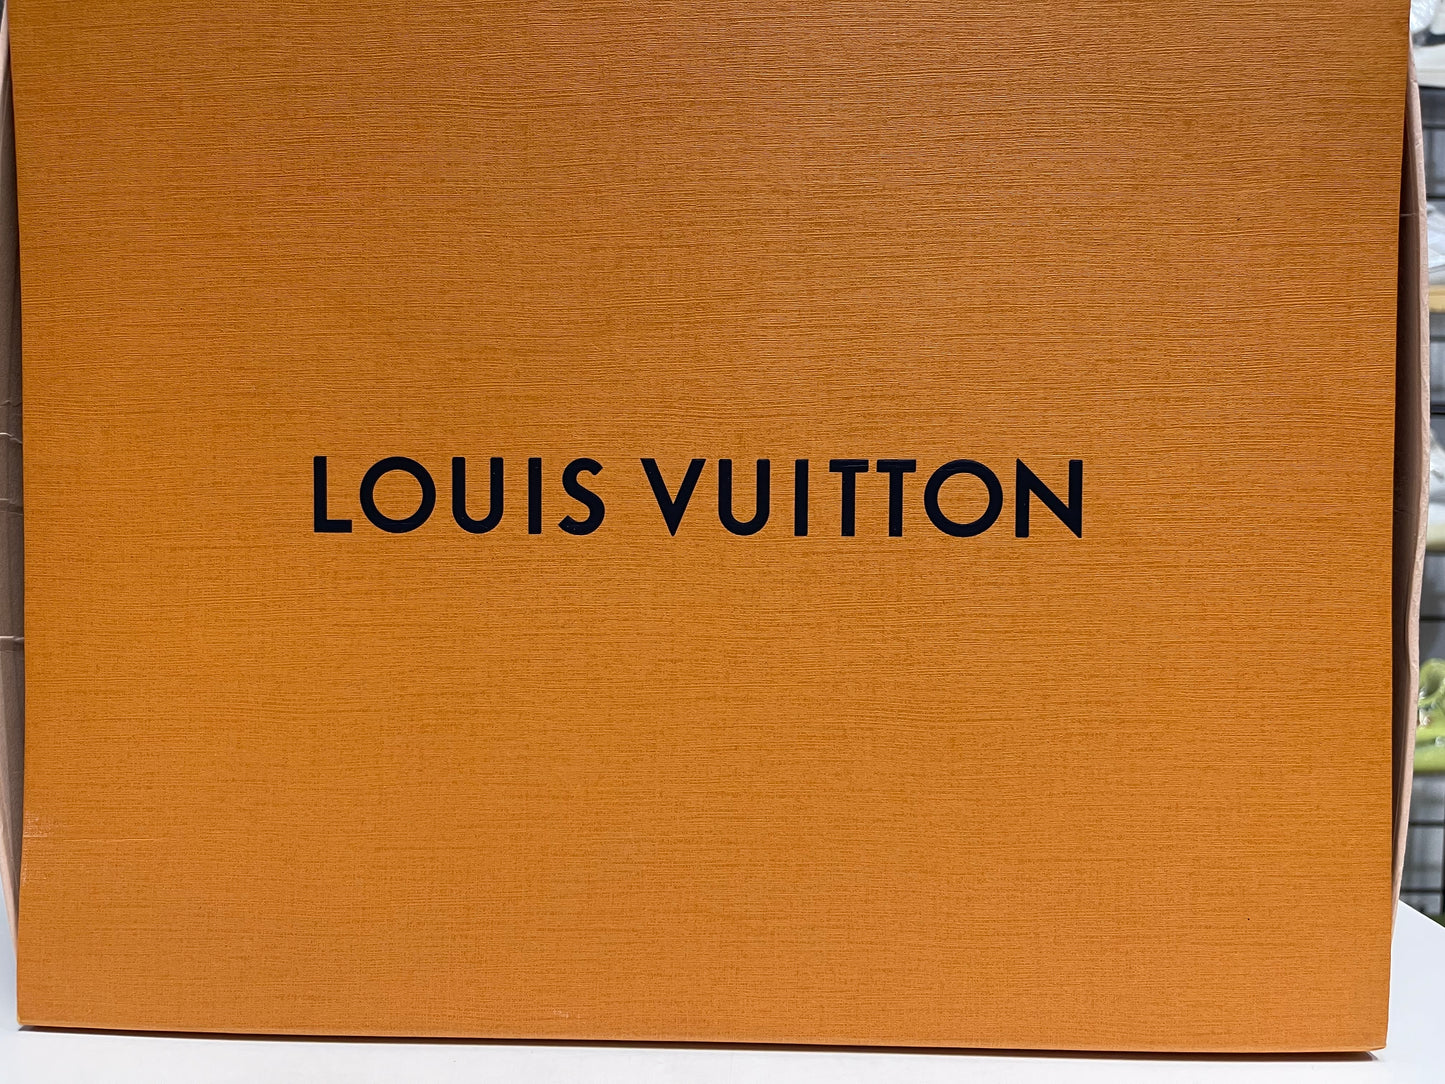 Louis Vuitton LV Trainer Black Sneaker Size 7.5LV